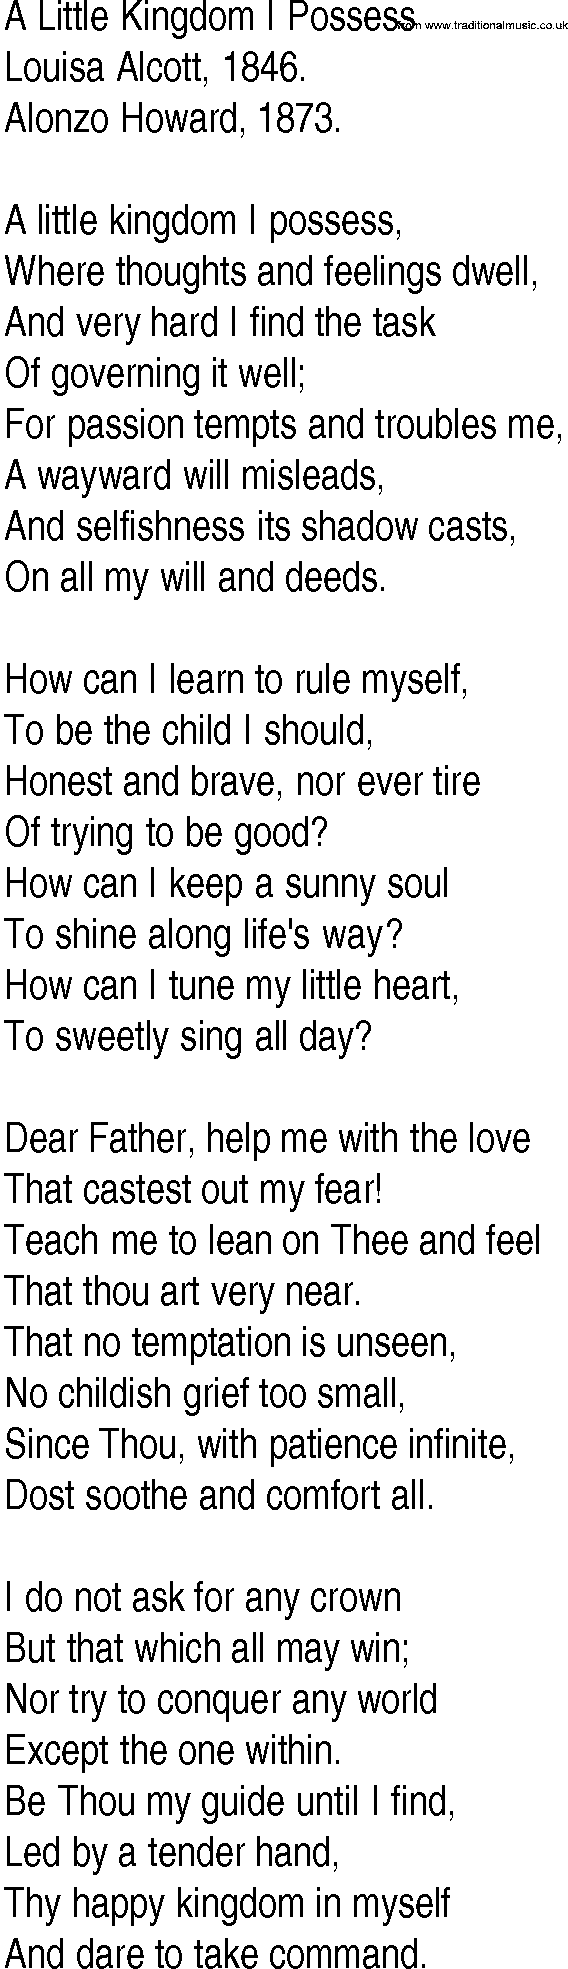 Hymn and Gospel Song: A Little Kingdom I Possess by Louisa Alcott lyrics